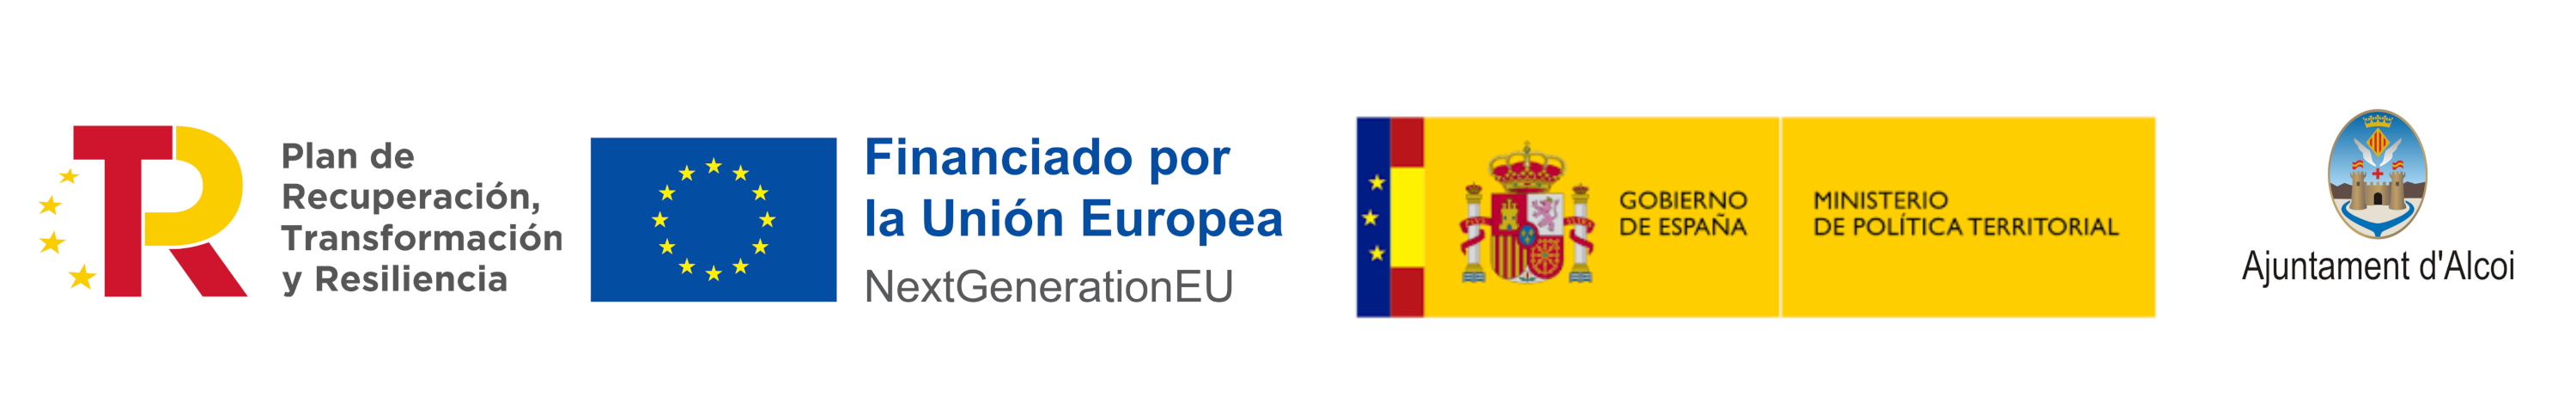 Logotips Pla de Recuperació, Transformació i Resiliència; Next Generation UE; Ministeri de Política Territorial, Govern d'Espanya; Ajuntament d'Alcoi